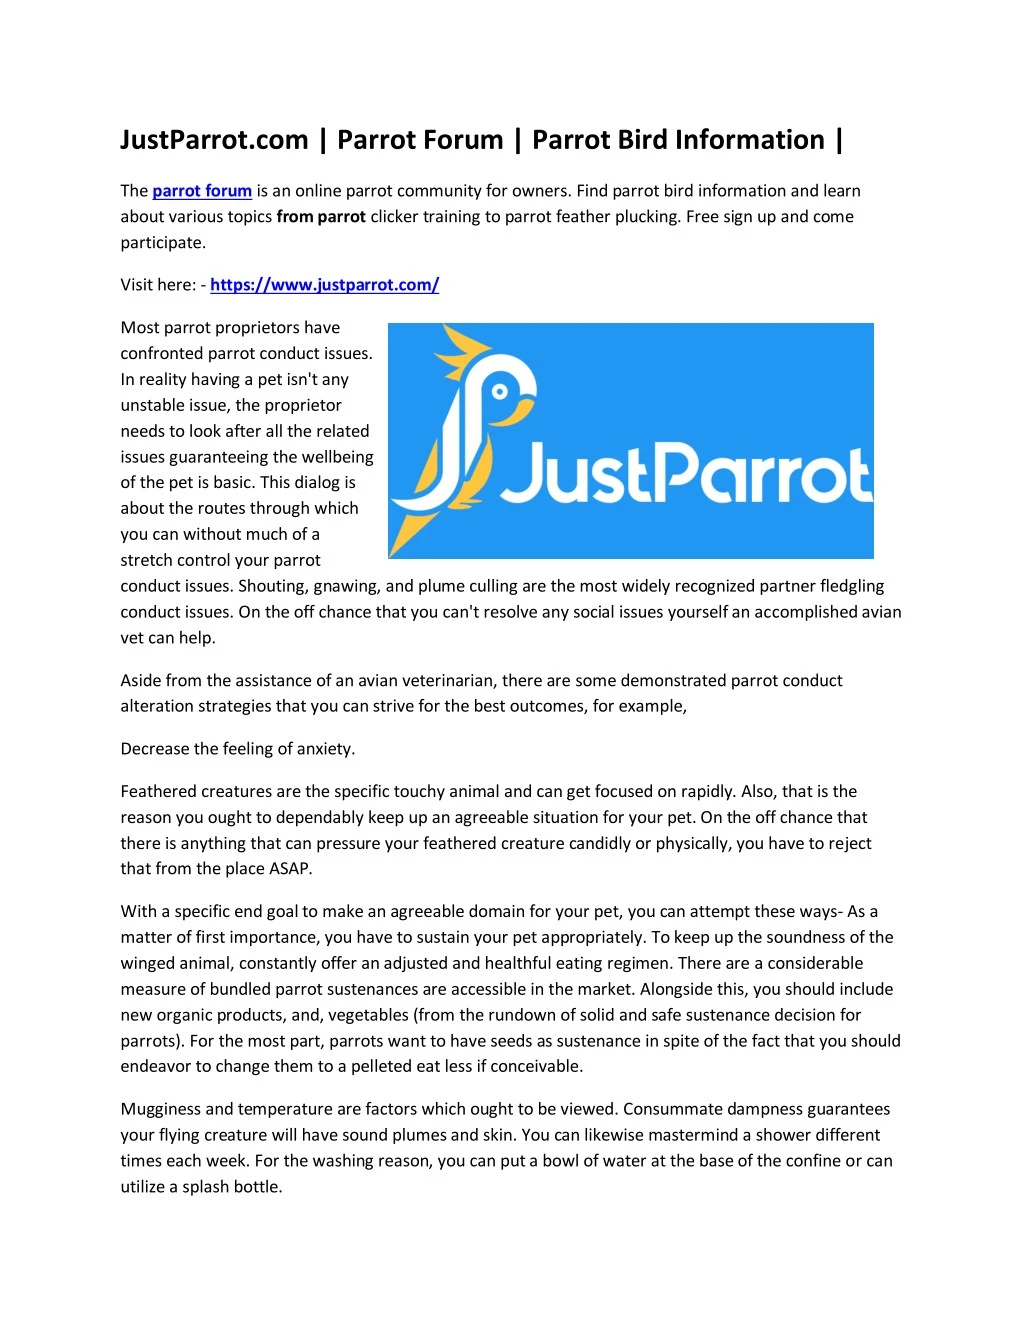 justparrot com parrot forum parrot bird